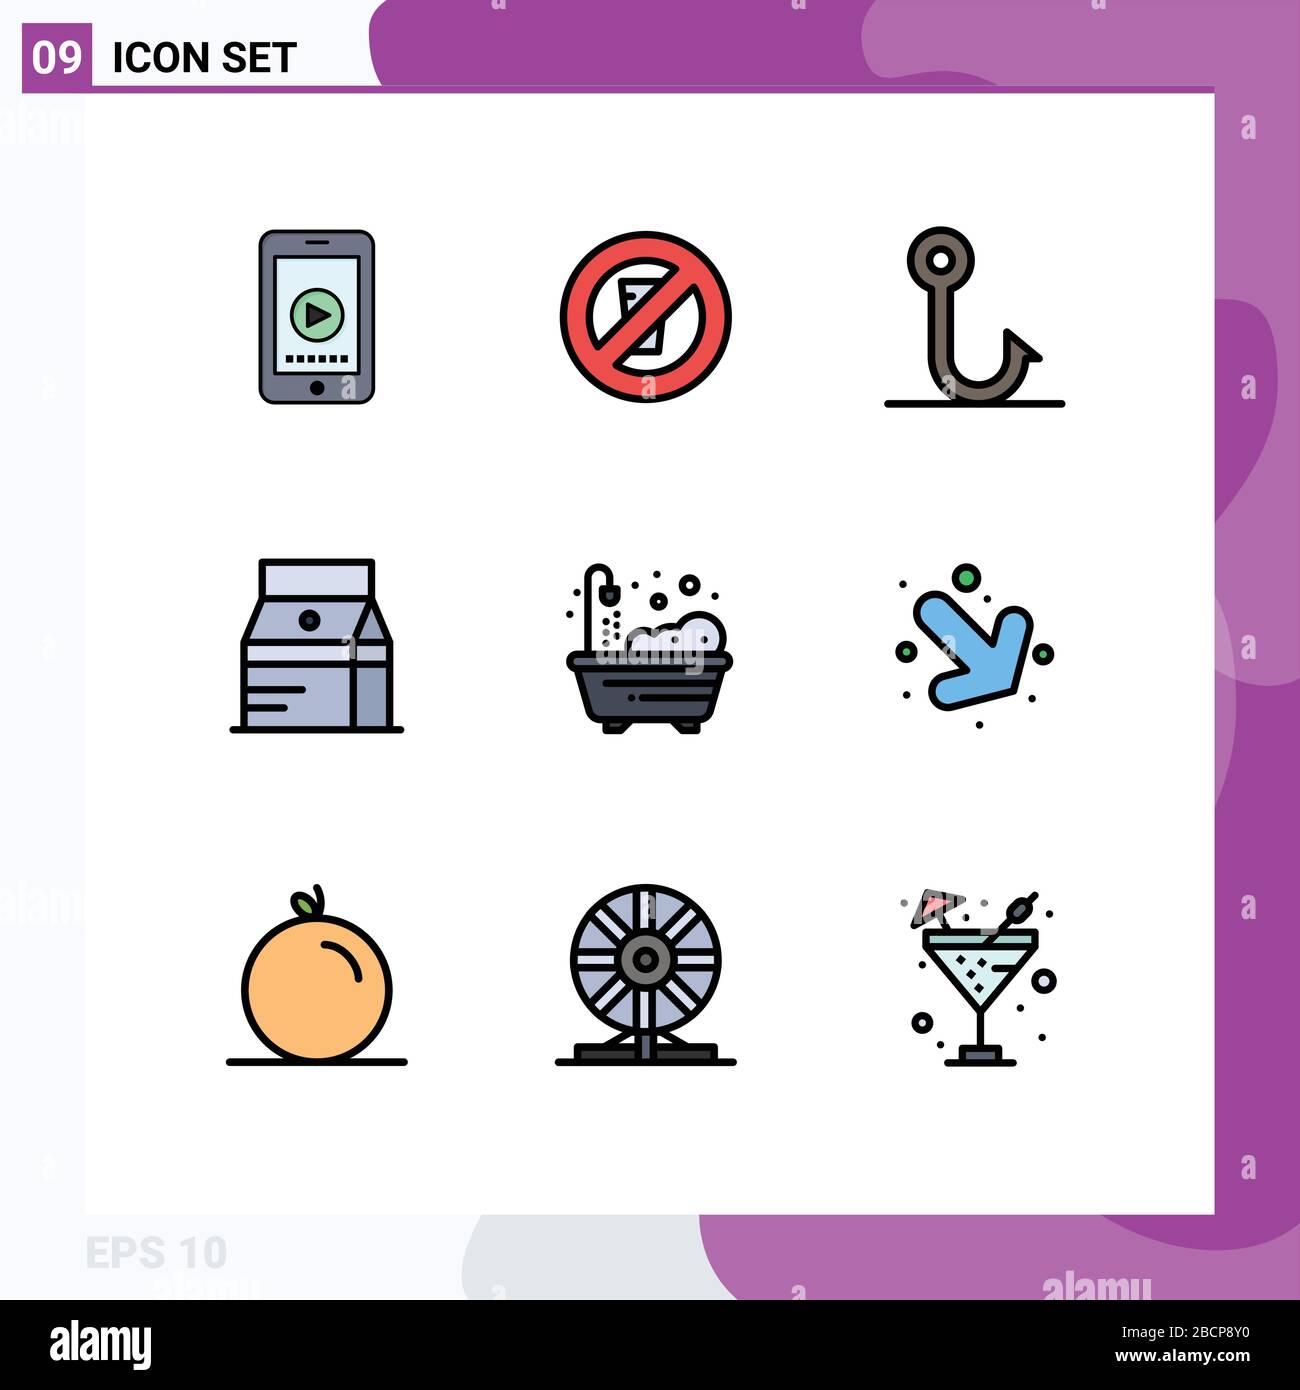 Jeu de 9 icônes modernes de l'interface utilisateur symboles signes pour la vie, le lait, le poisson, le jus, boire Editable Vector Design Elements Illustration de Vecteur